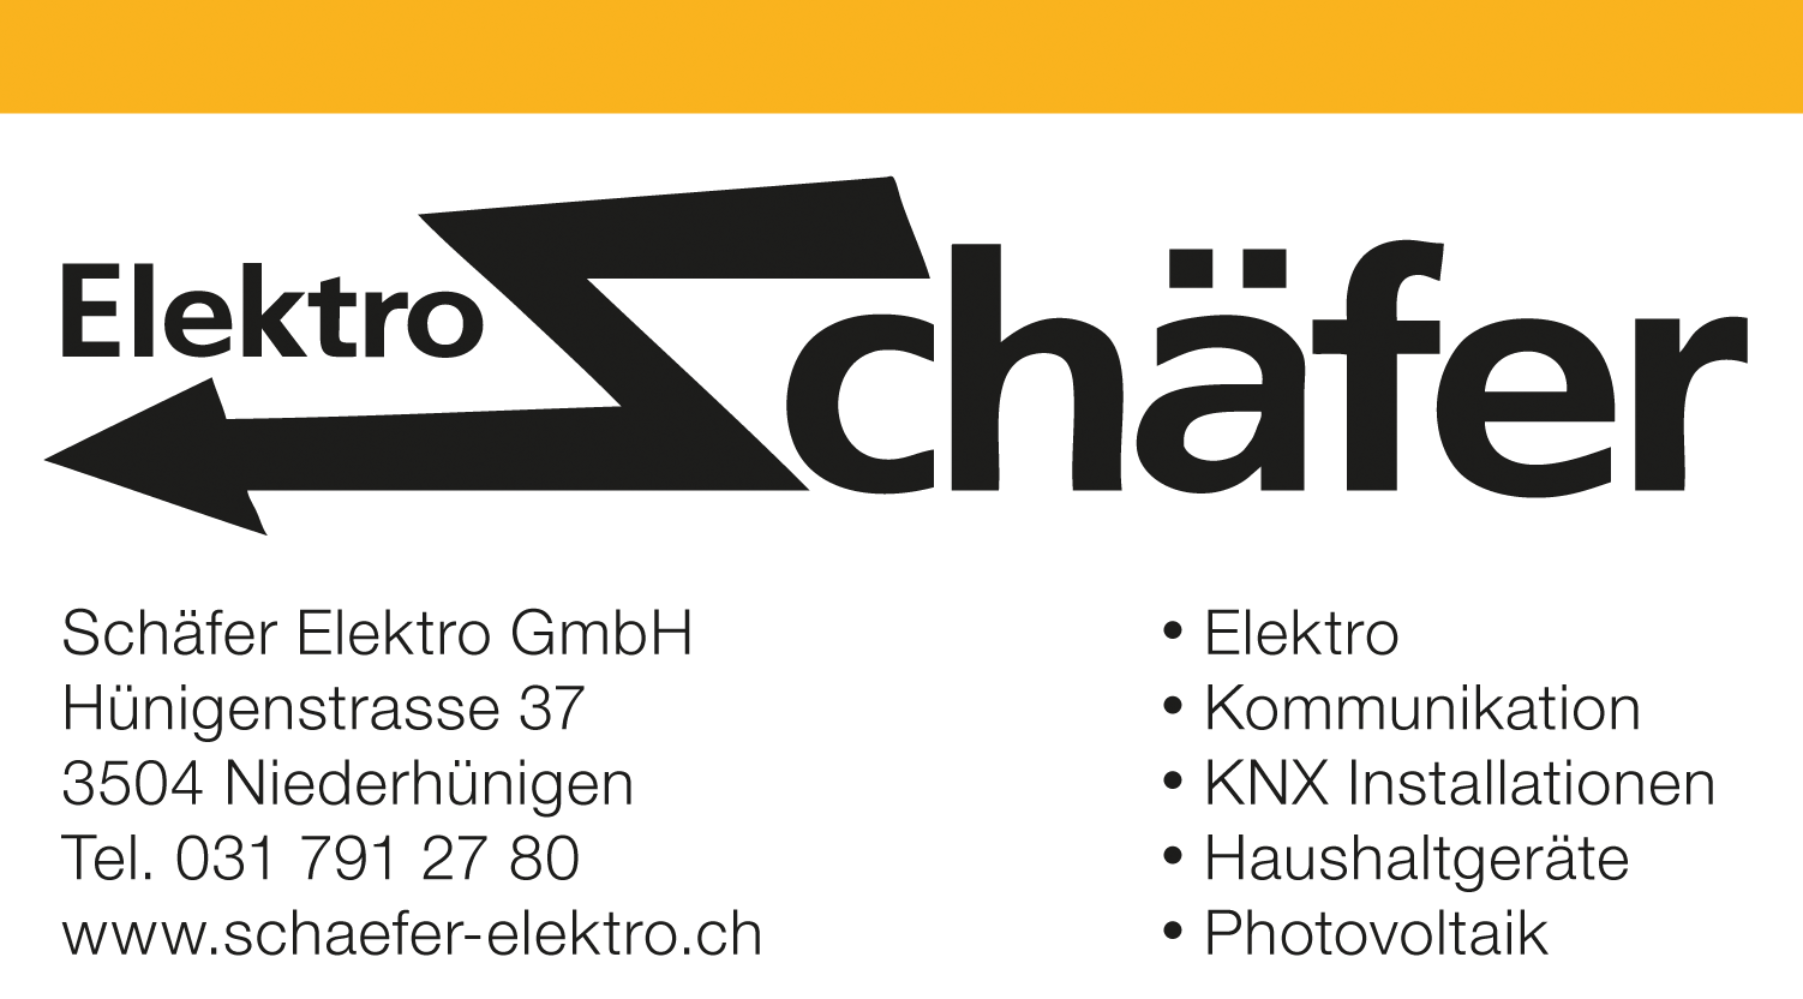 Schäfer Elektro GmbH